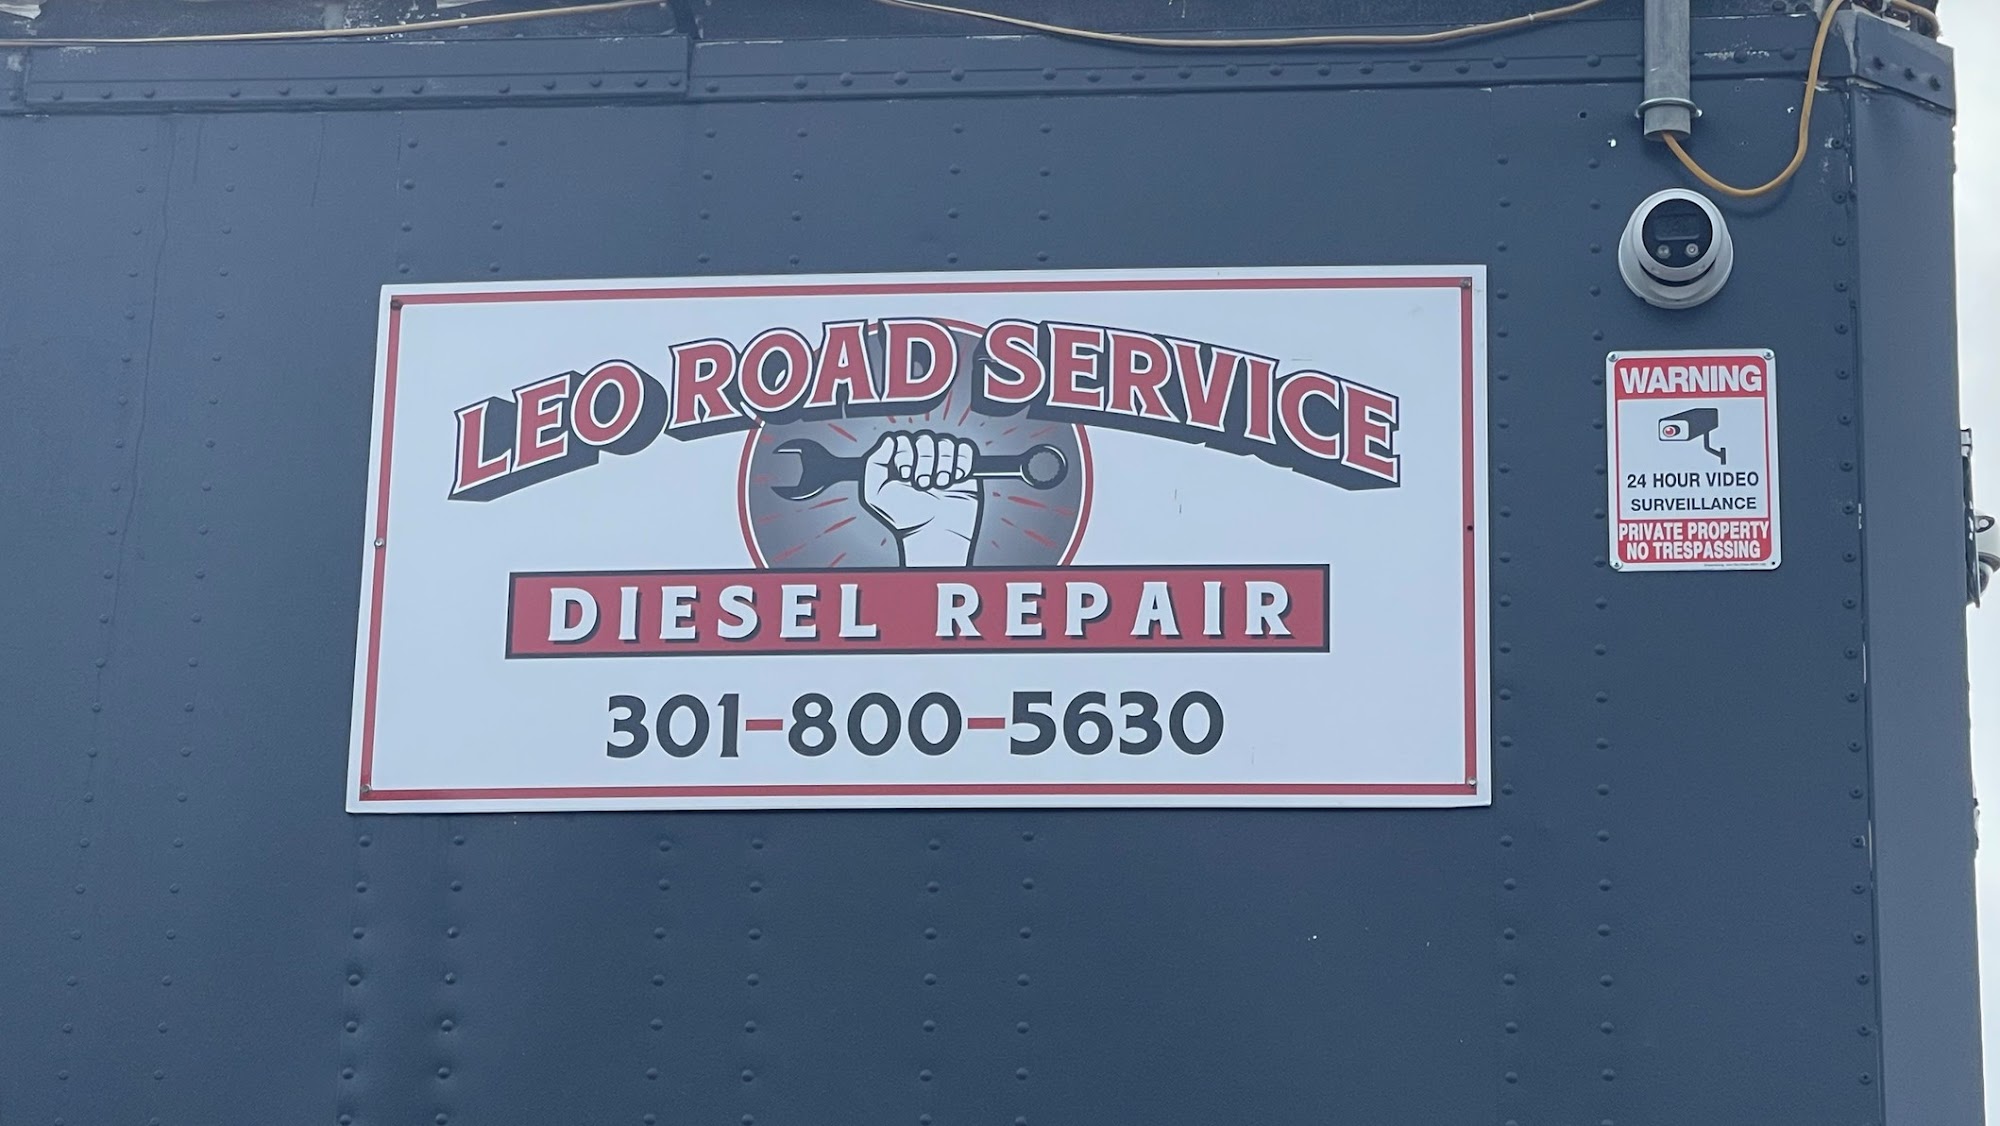 Leo Road Service Diesel Repair